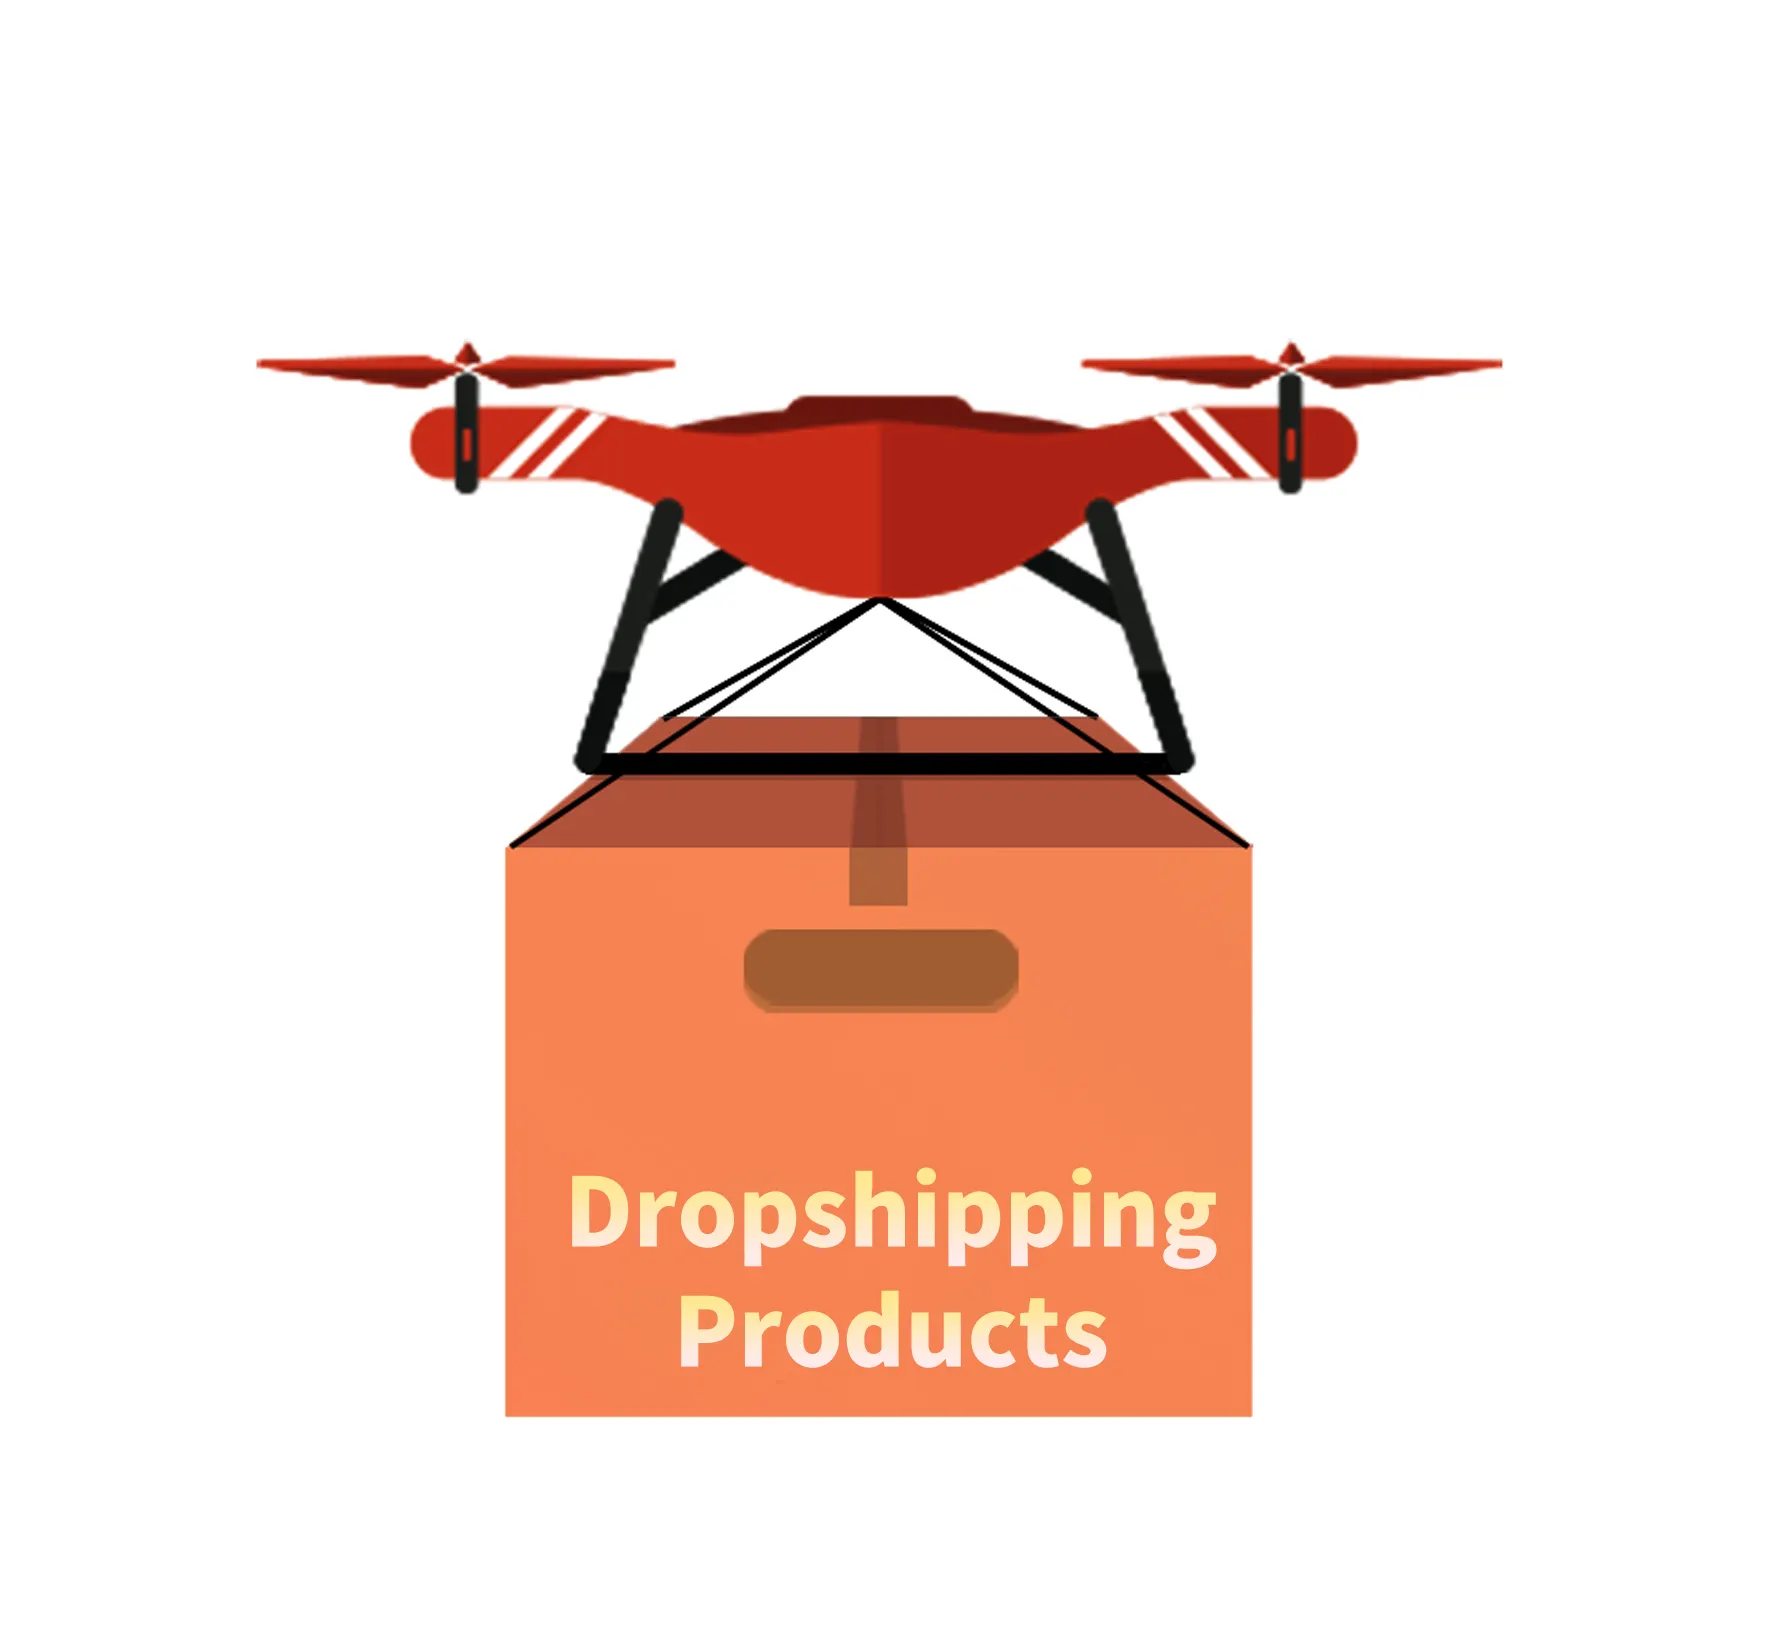 Drop-Ship Dropshipping Produkte 2024 Auto-Handyhalter-Ständerhalter für Shopify vom 1688 Dropshipping-Lieferanten